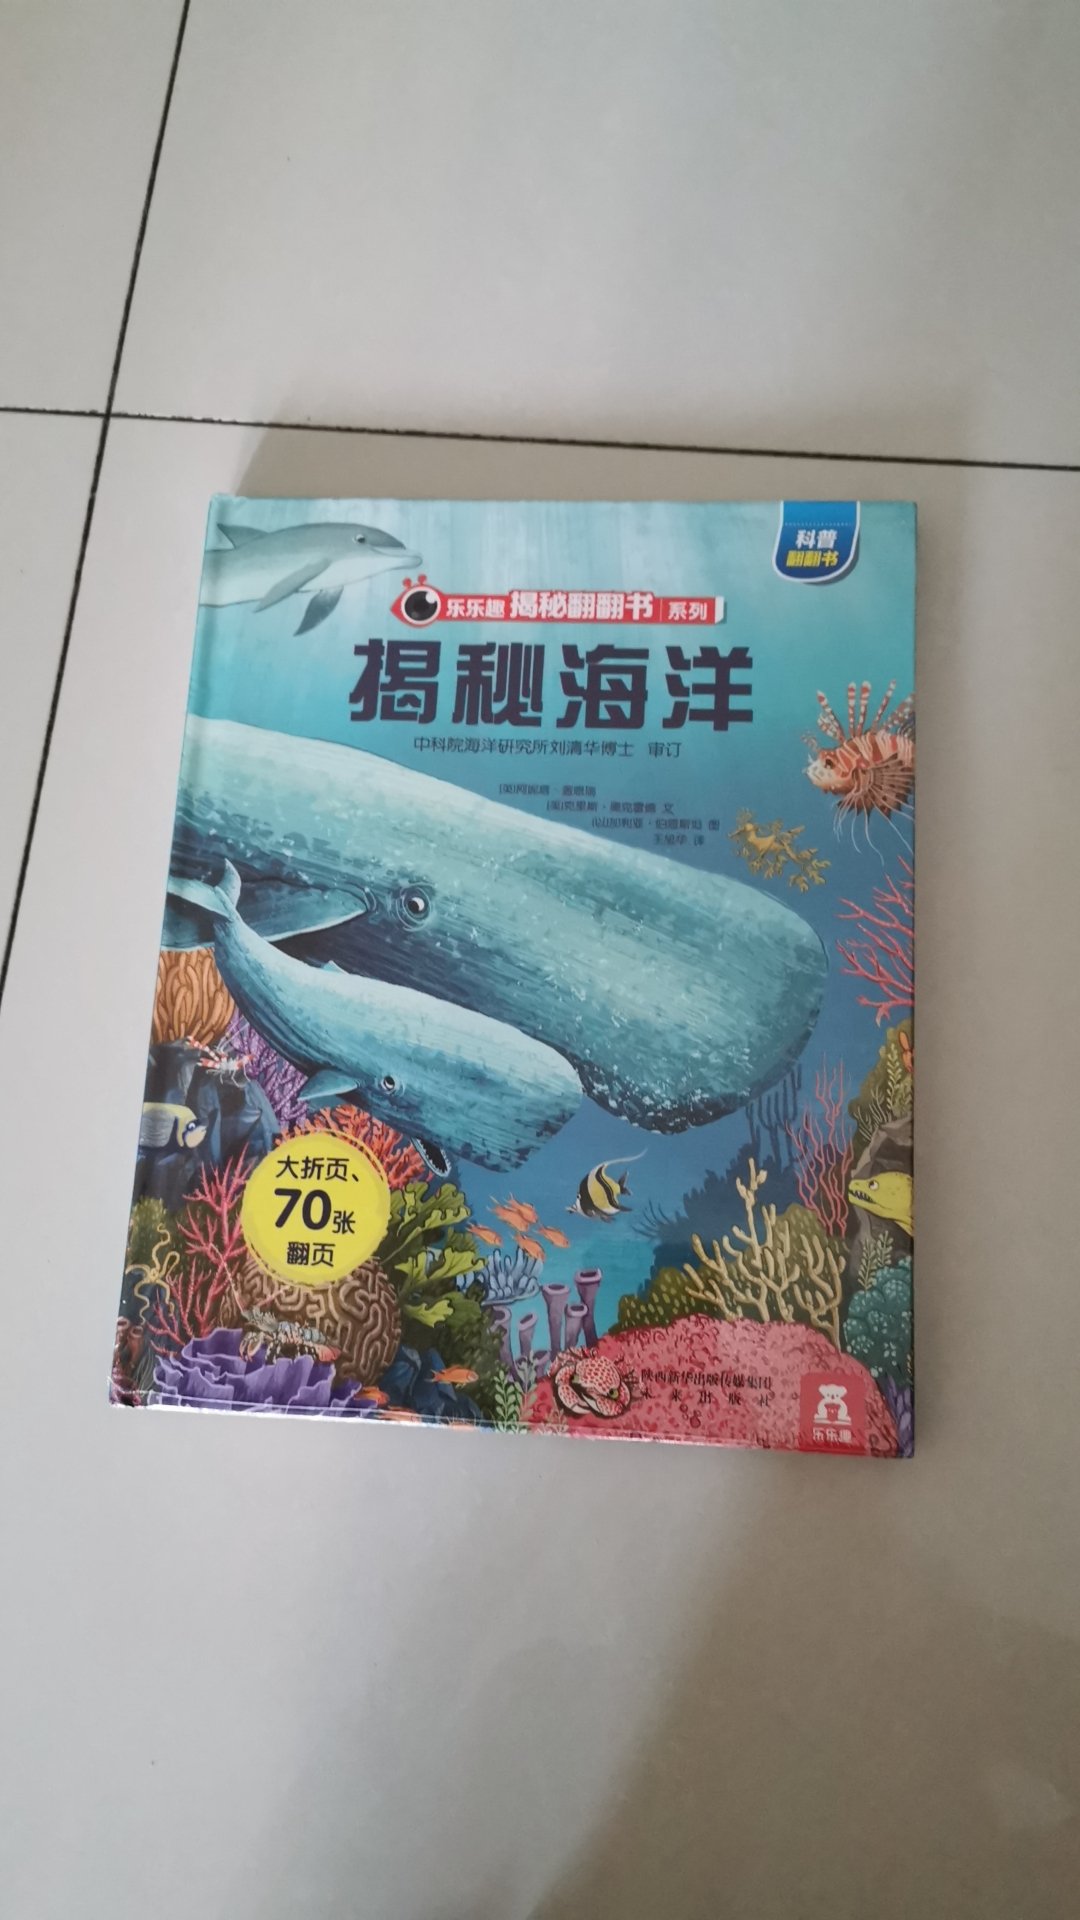 买逻辑狗赠送的一本童书 还没拆封 看标题是关于海底世界的故事 我娃很喜欢 等看完了再来追评